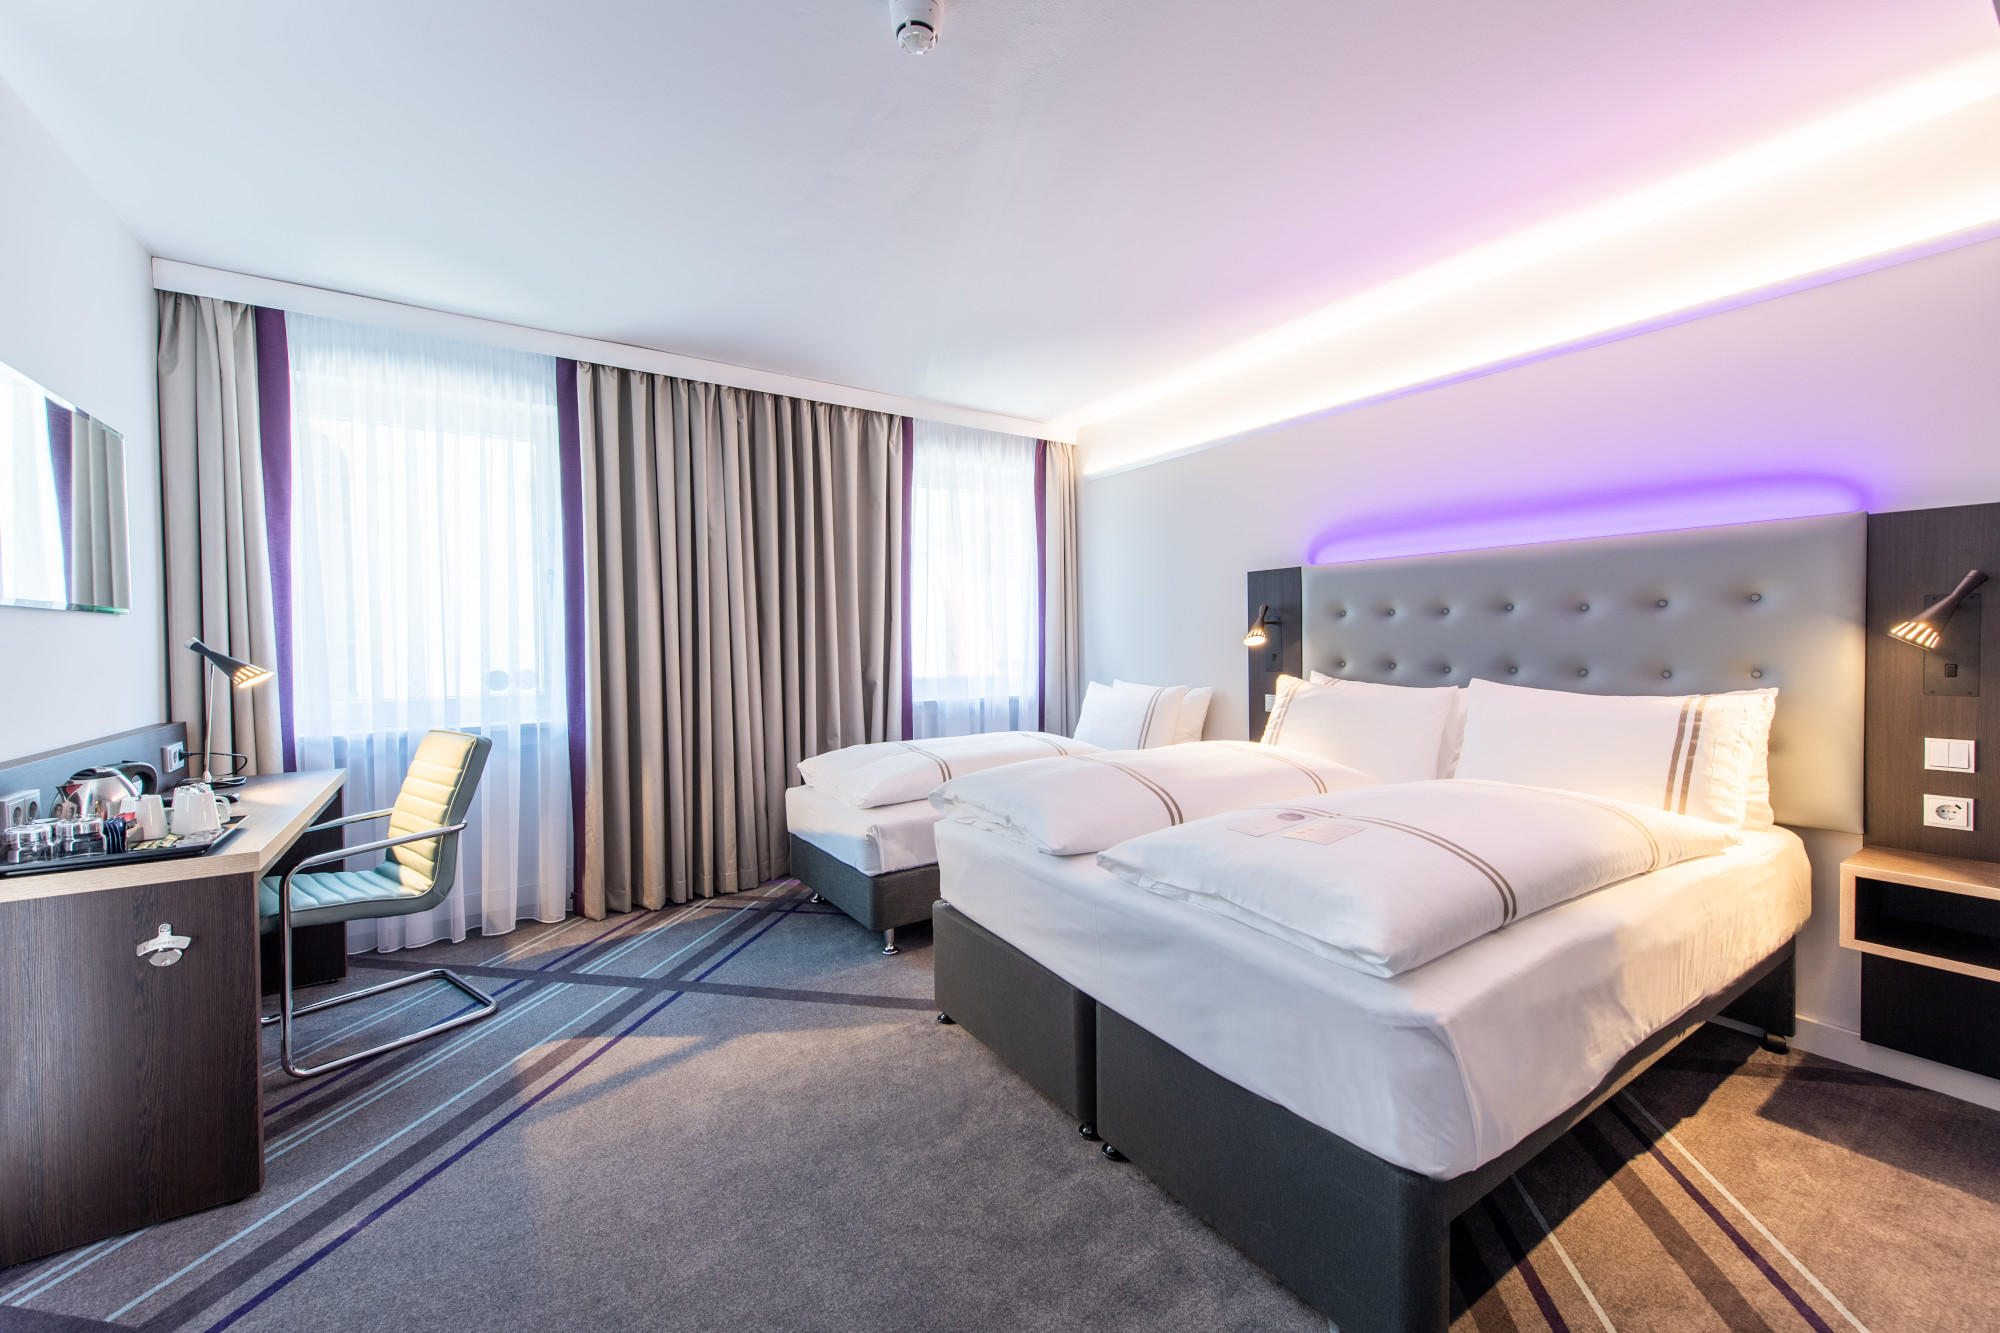 Kundenbild groß 10 Premier Inn Passau Weisser Hase hotel